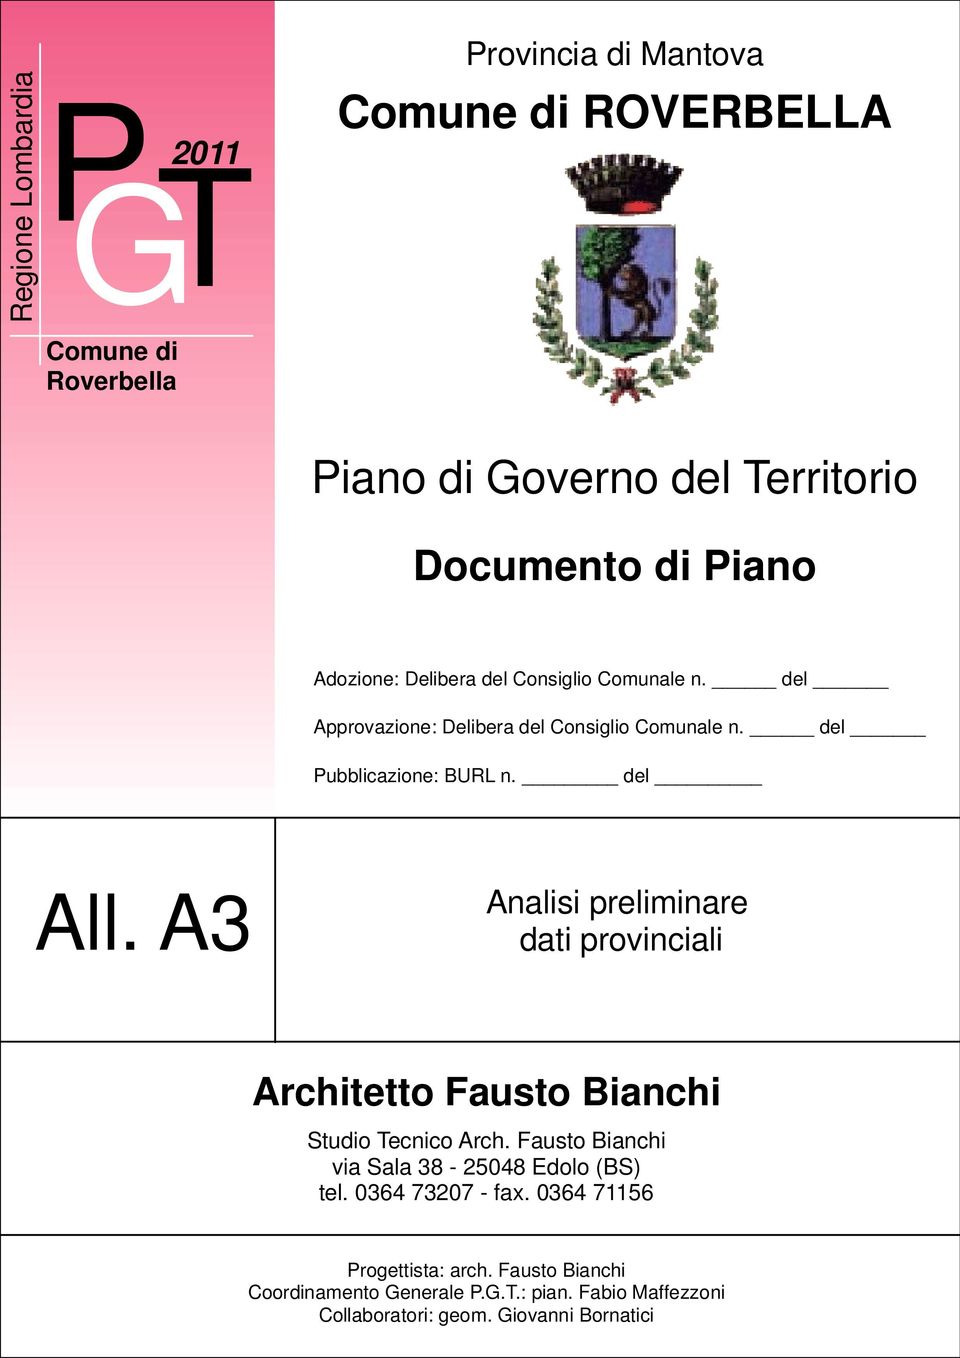 del All. A3 Analisi preliminare dati provinciali Studio Tecnico Arch. Fausto Bianchi via Sala 38-25048 Edolo (BS) tel. 0364 73207 - fax.